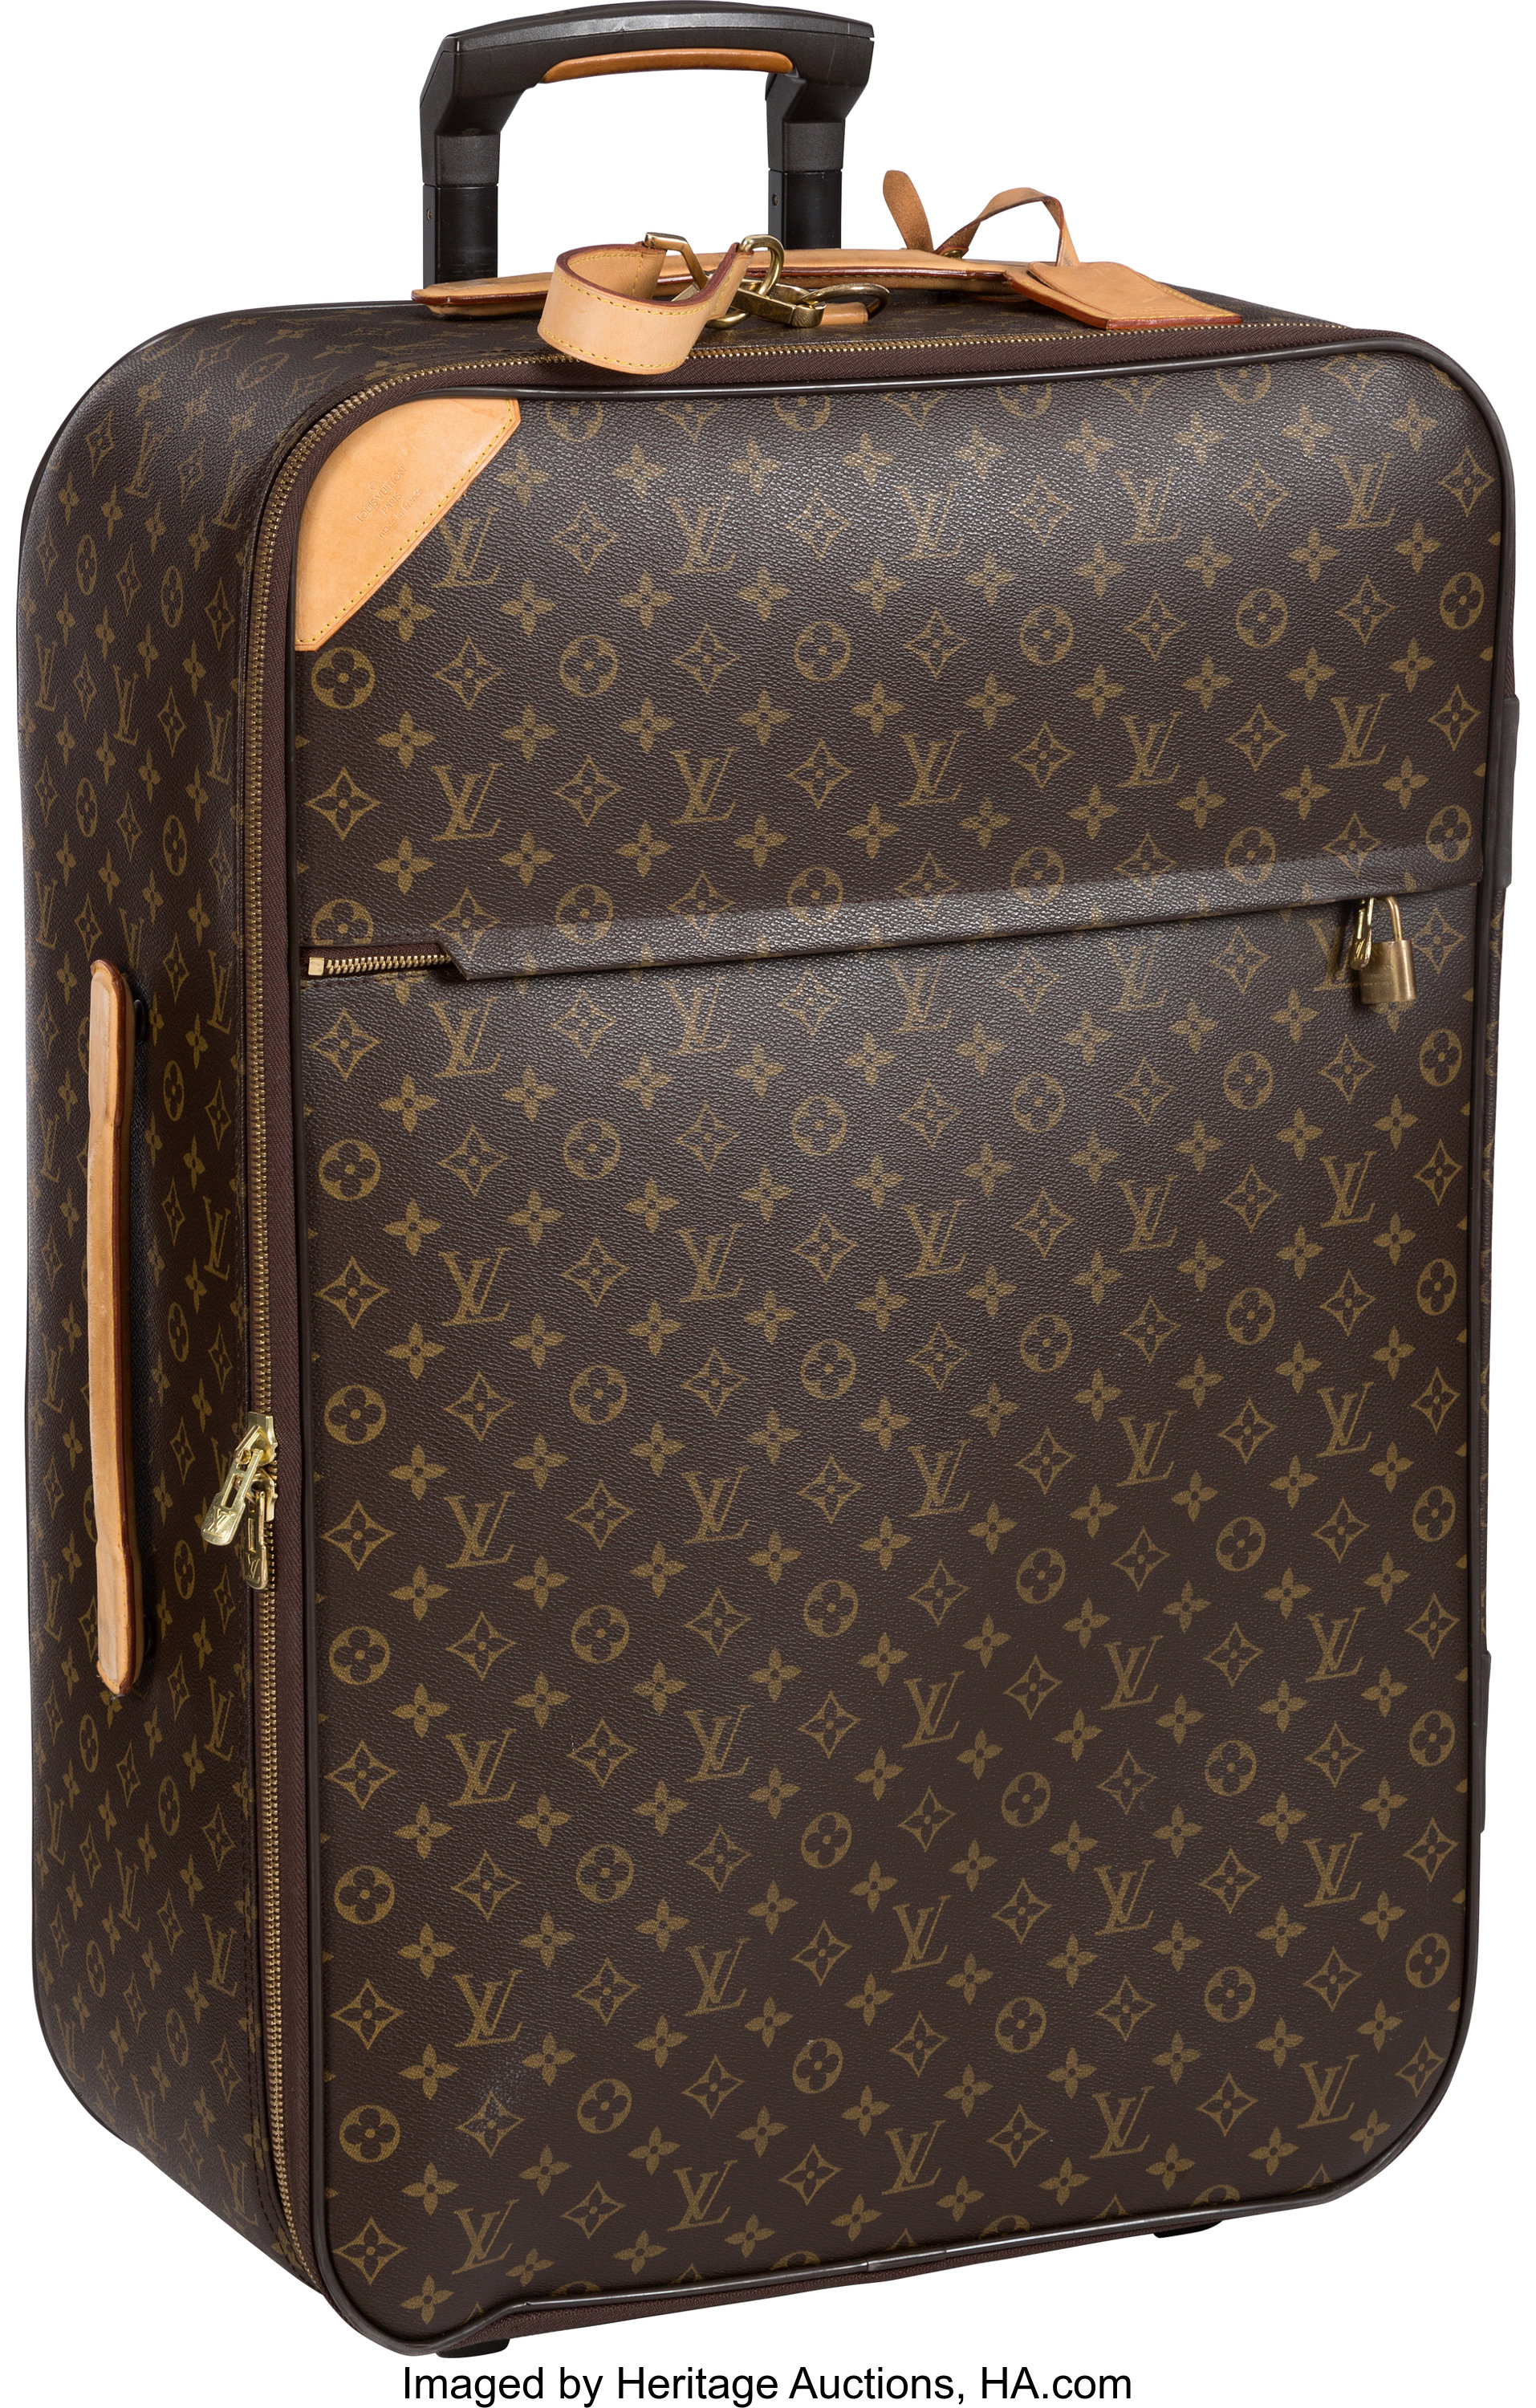 Sold at Auction: Louis Vuitton, LOUIS VUITTON suit bag, Monogram Canvas